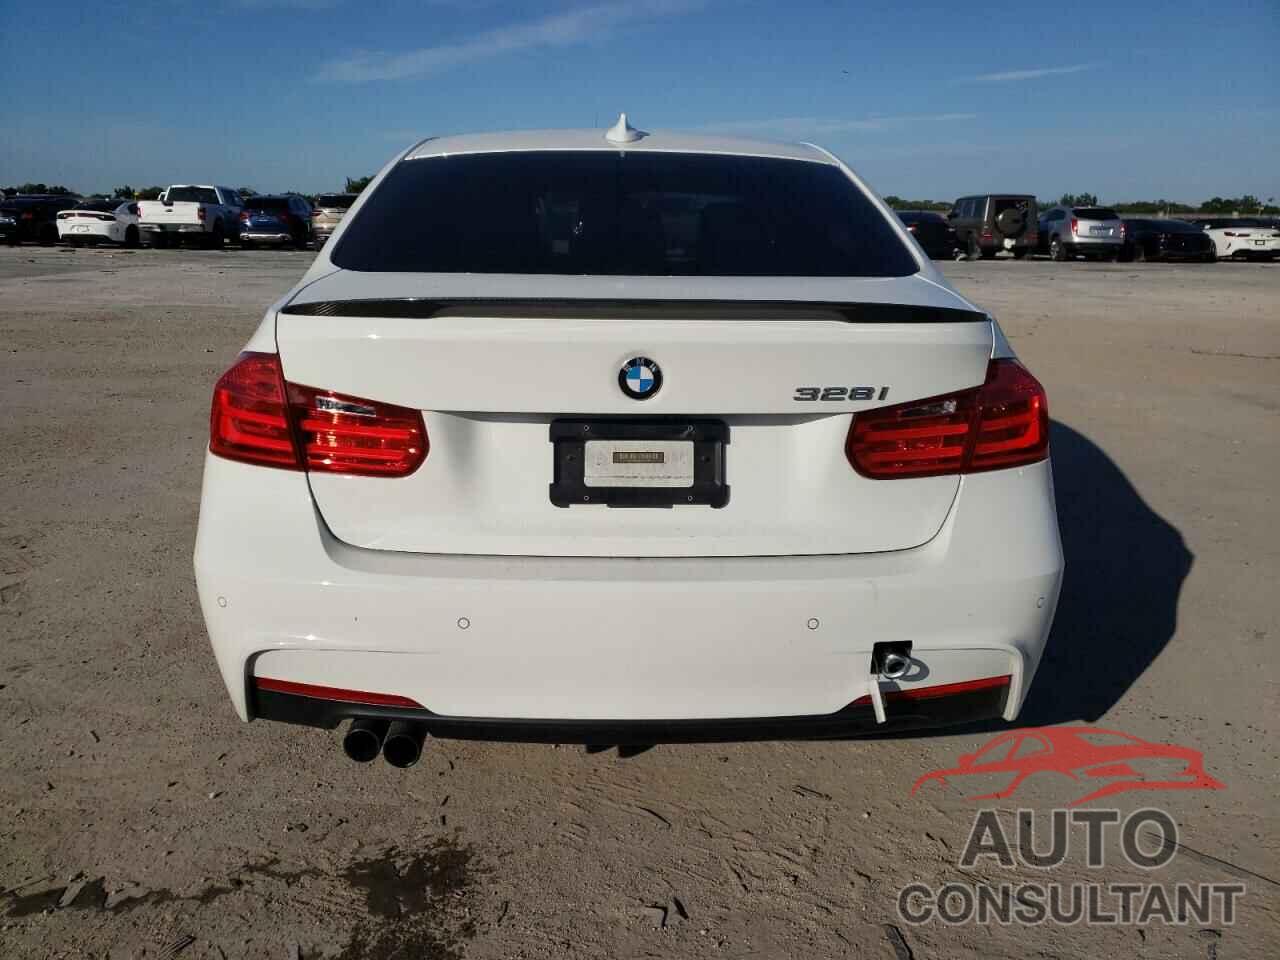 BMW 3 SERIES 2015 - WBA3A5C55FF607478